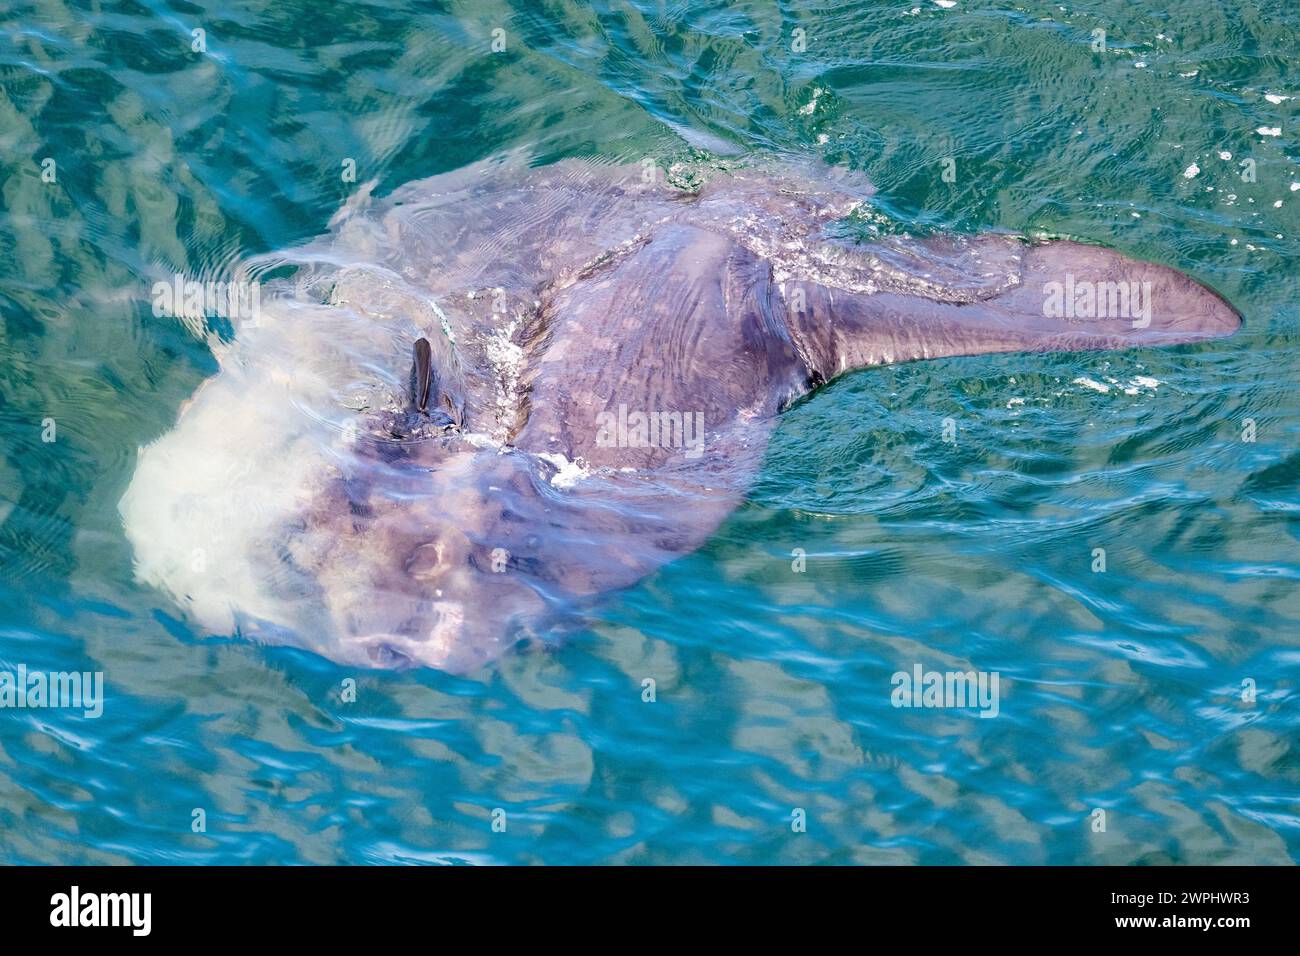 Un pesce sole dell'oceano, o Mola comune (Mola mola), uno dei pesci ossei più grandi, che nuota nell'oceano. Oceano Atlantico meridionale. Foto Stock